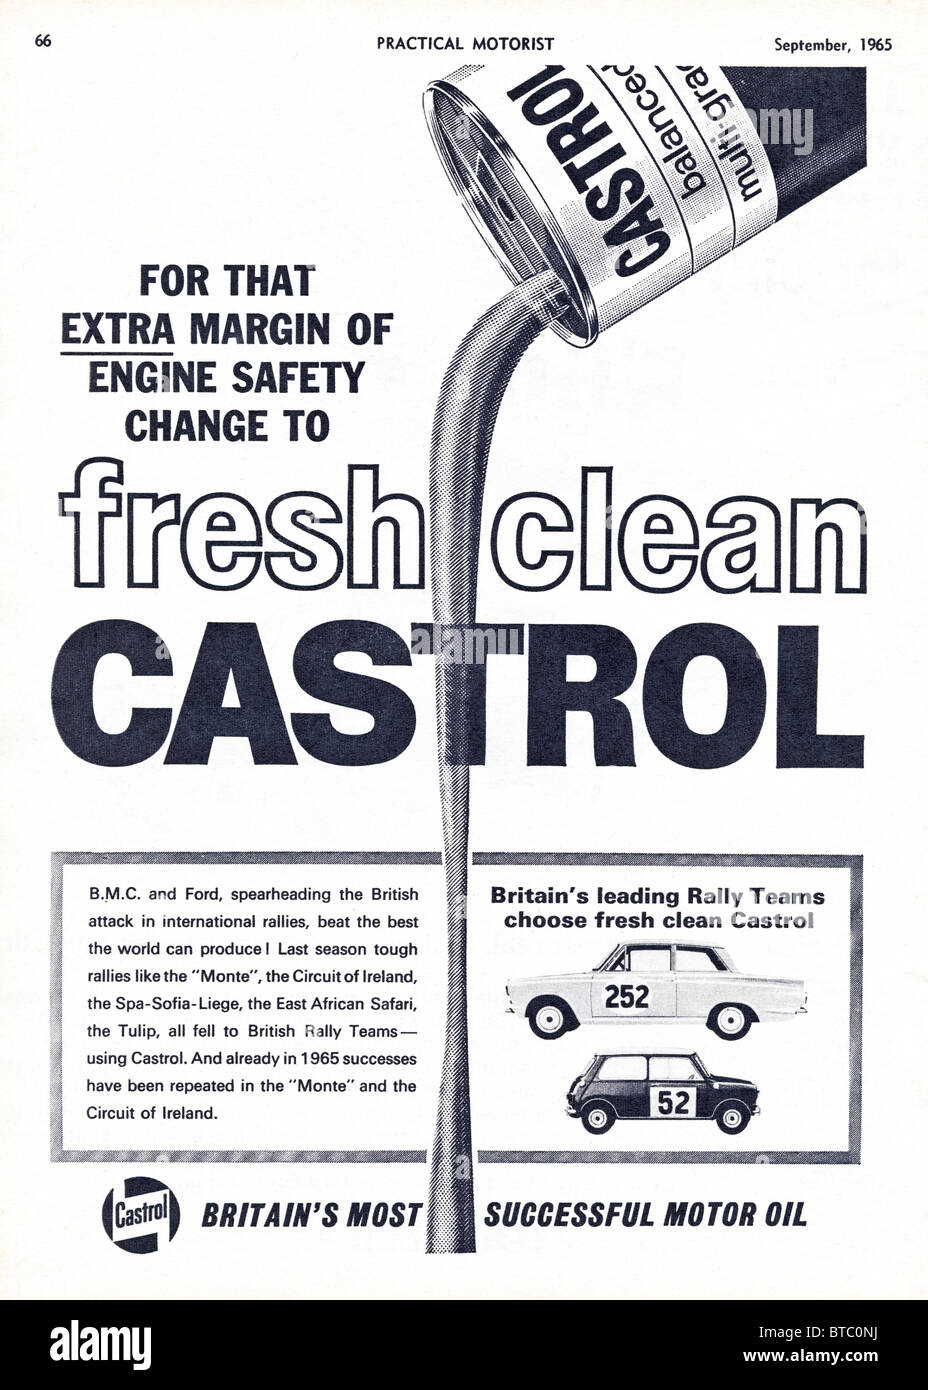 Annuncio per olio motore Castrol in pratica motorista rivista datata Settembre 1965 Foto Stock